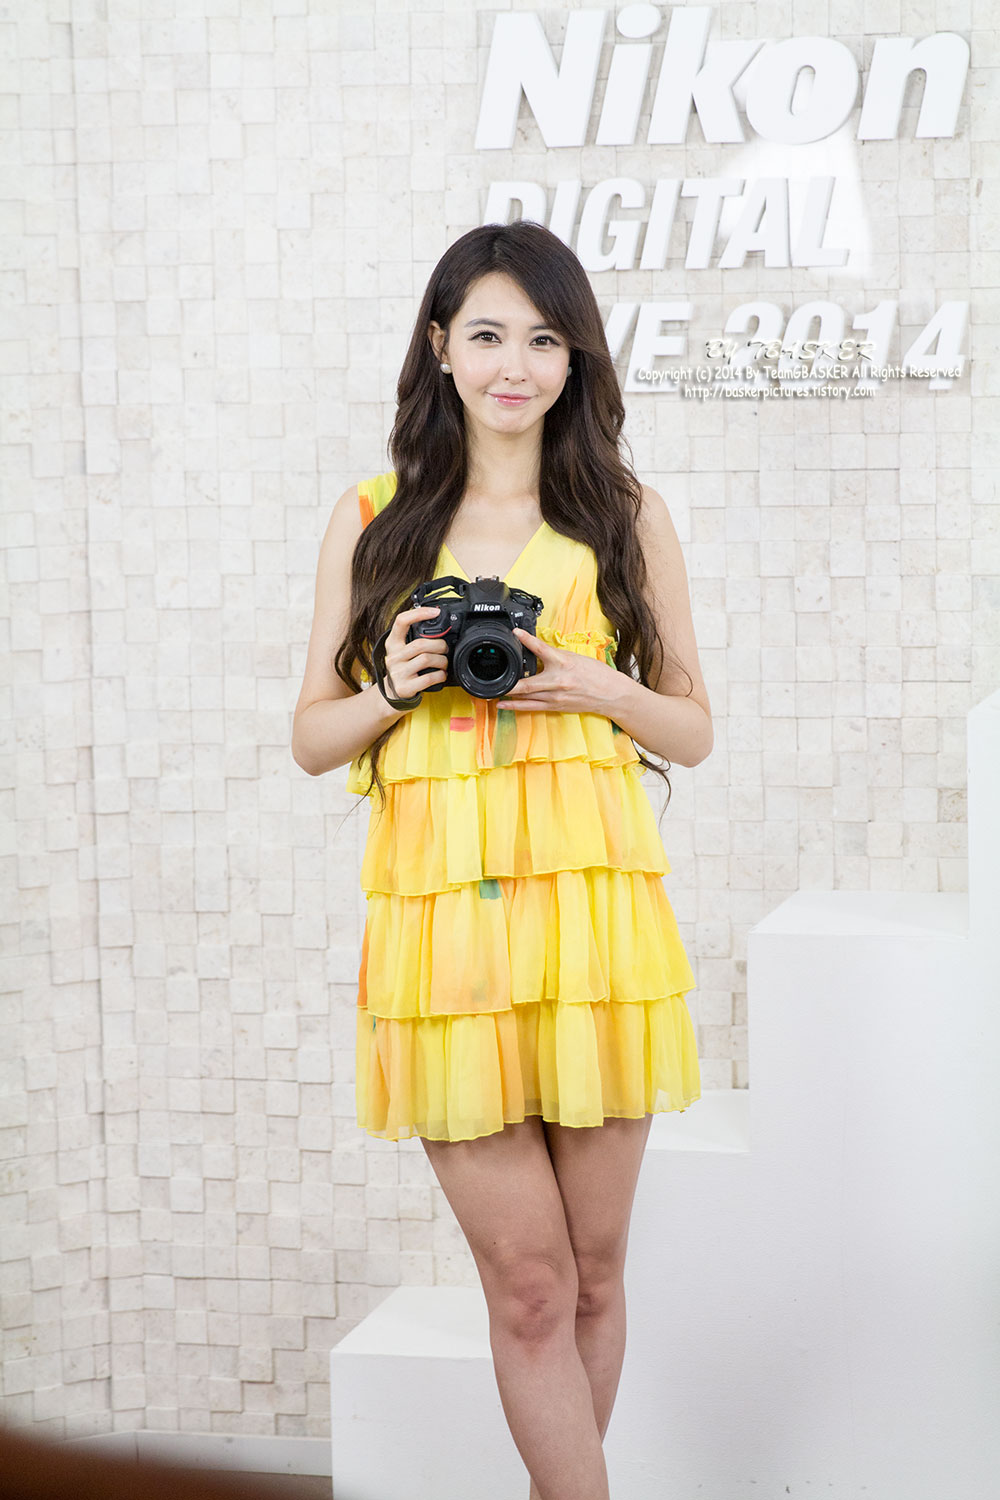 Kang Yui Nikon Digital Live 2014